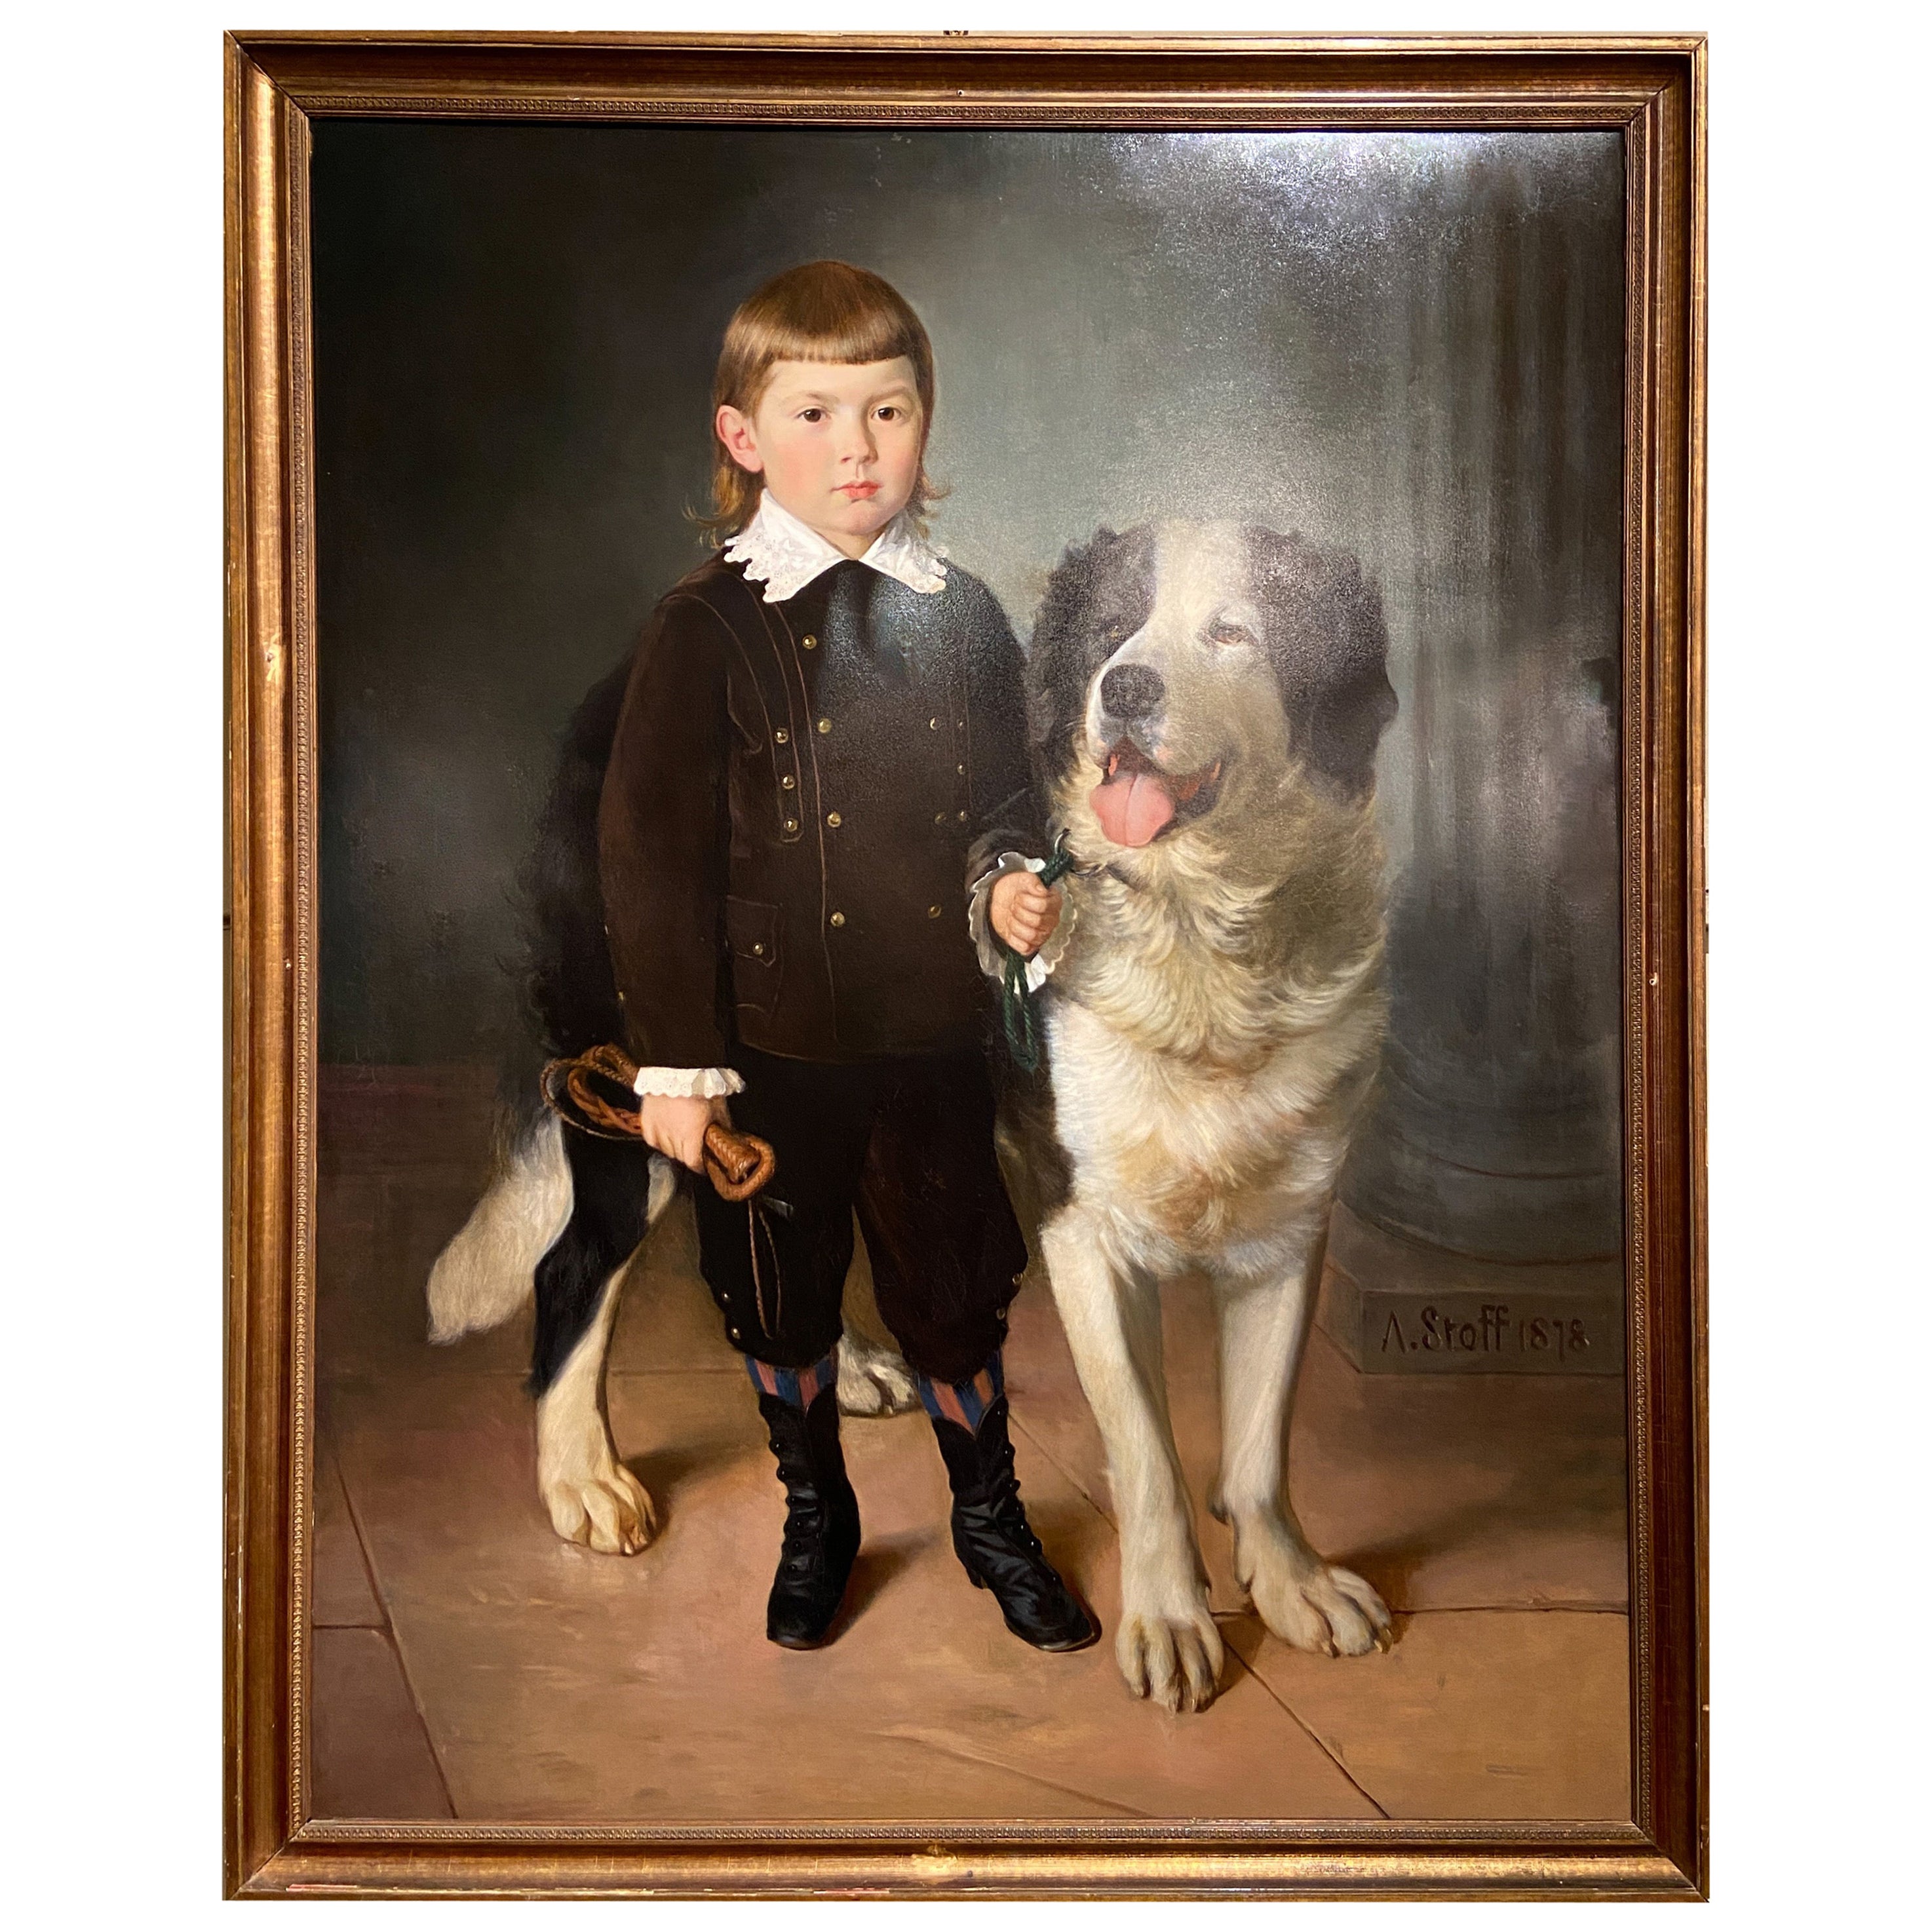 Antikes österreichisches Porträt-Ölgemälde von Junge und Hund, signiert, „A. Stoff 1878“